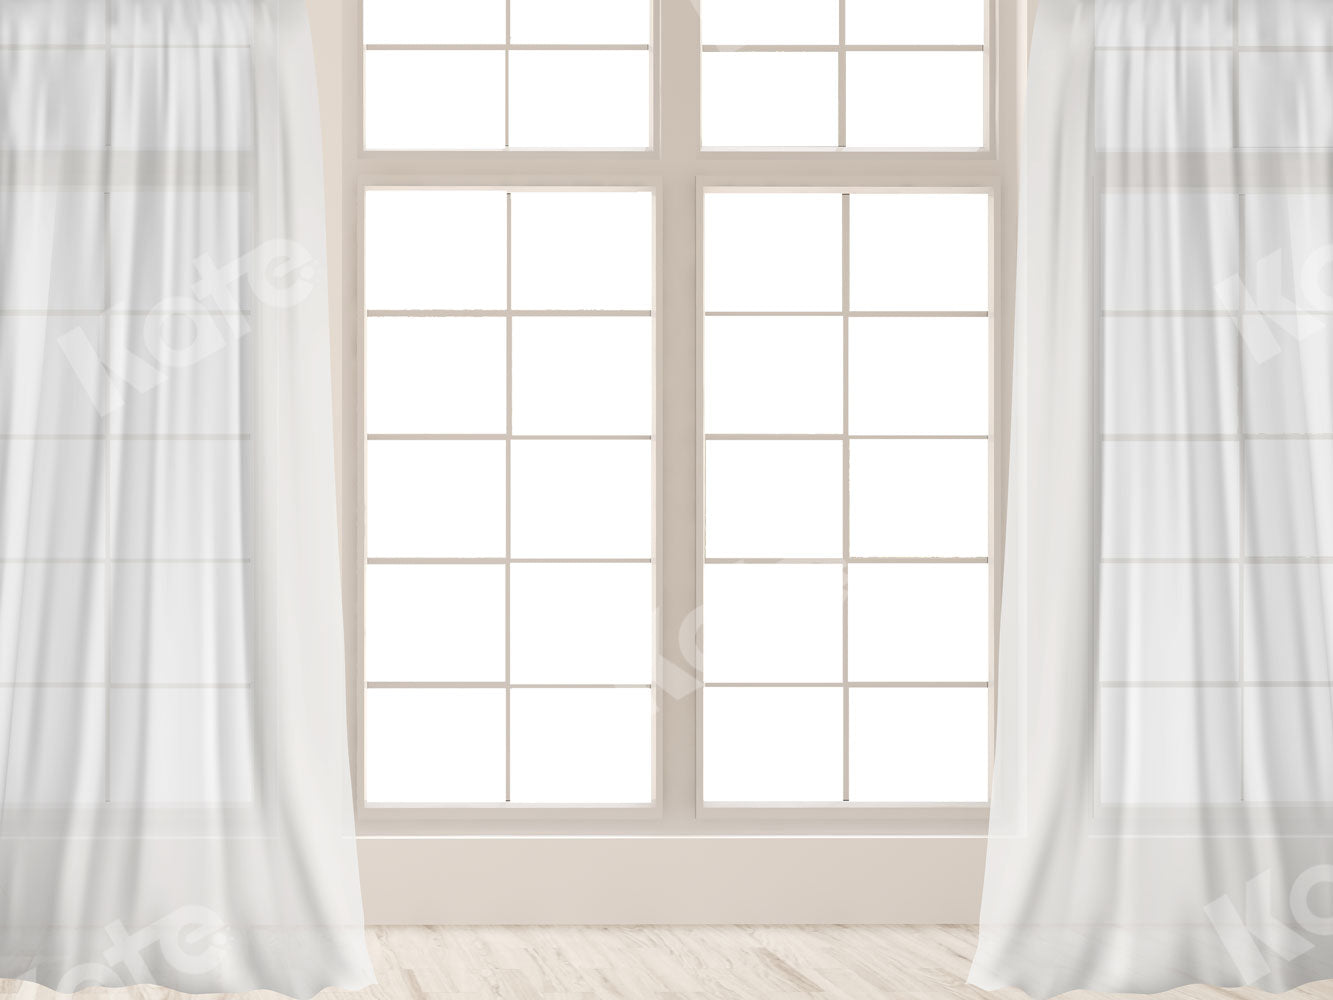 Kate 白いカーテン窓 写真の背景